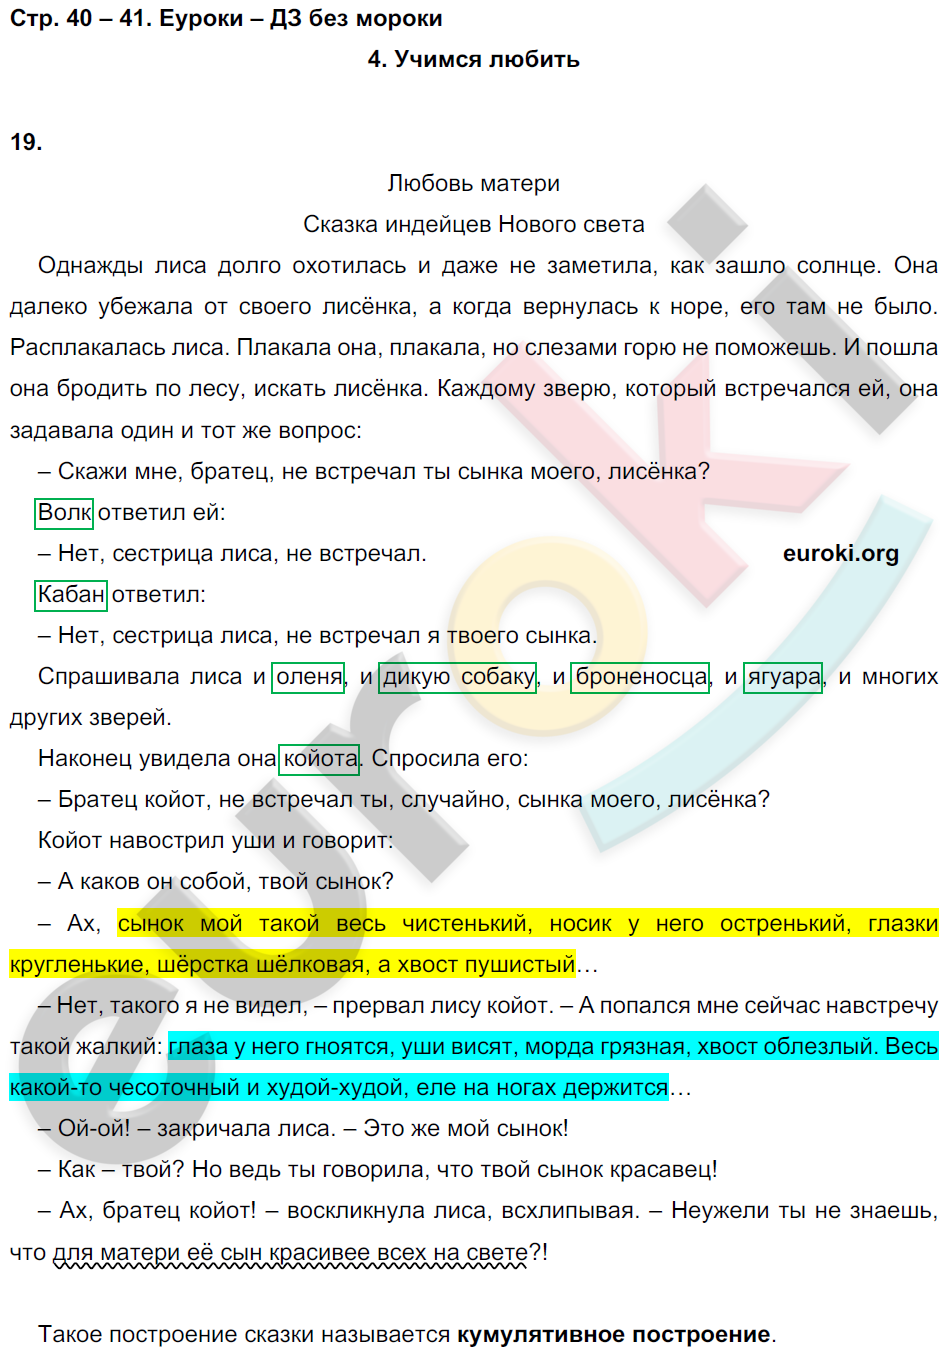 ГДЗ Литература Малаховская 3 класс Рабочая тетрадь Номер стр. 40